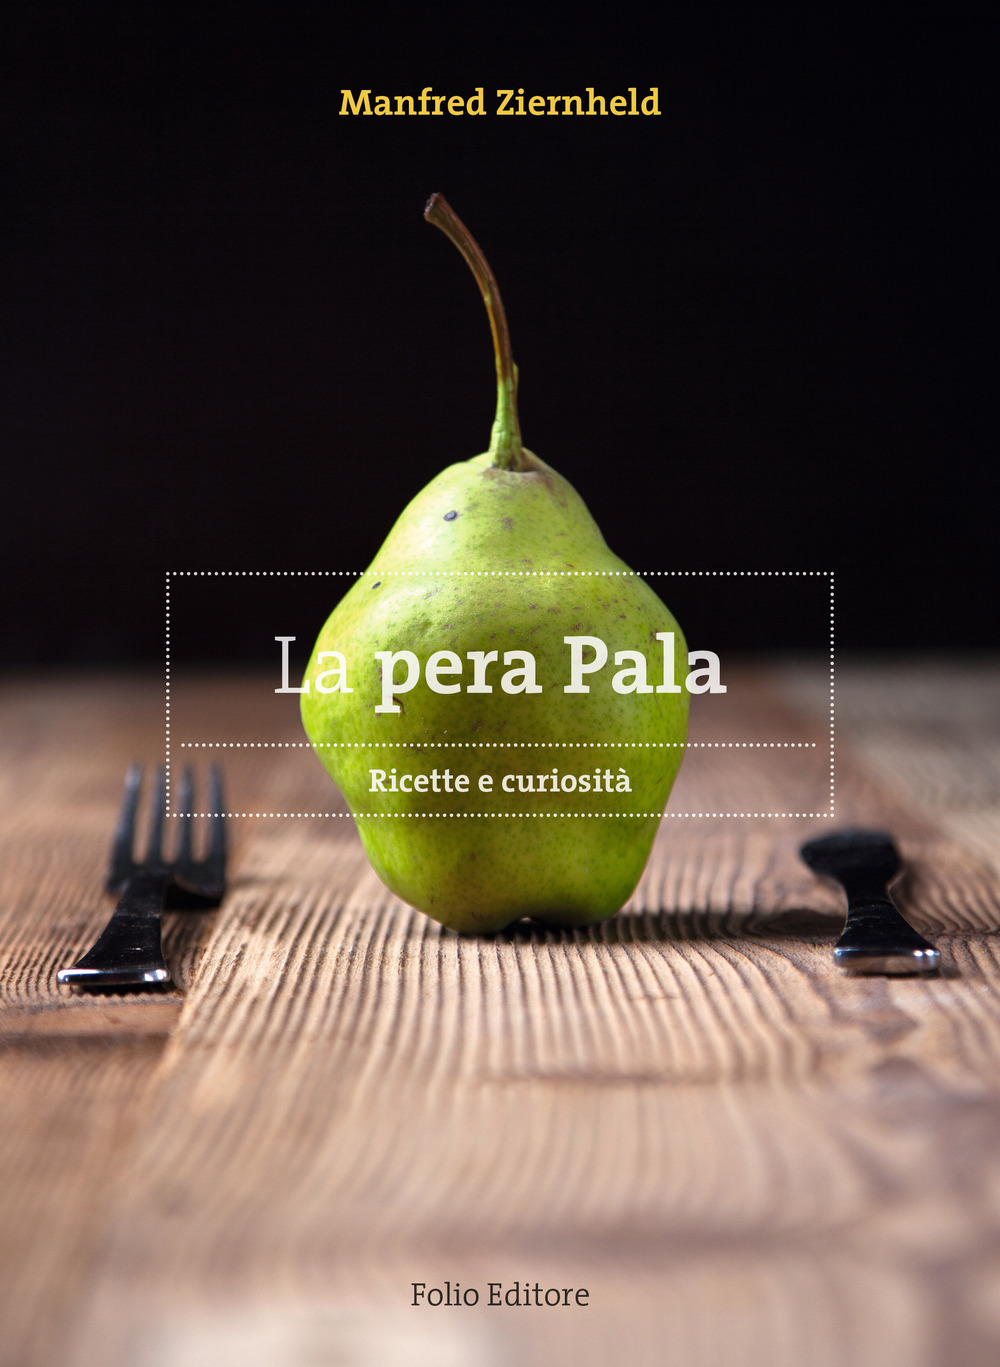 La pera Pala. Ricette e curiosità